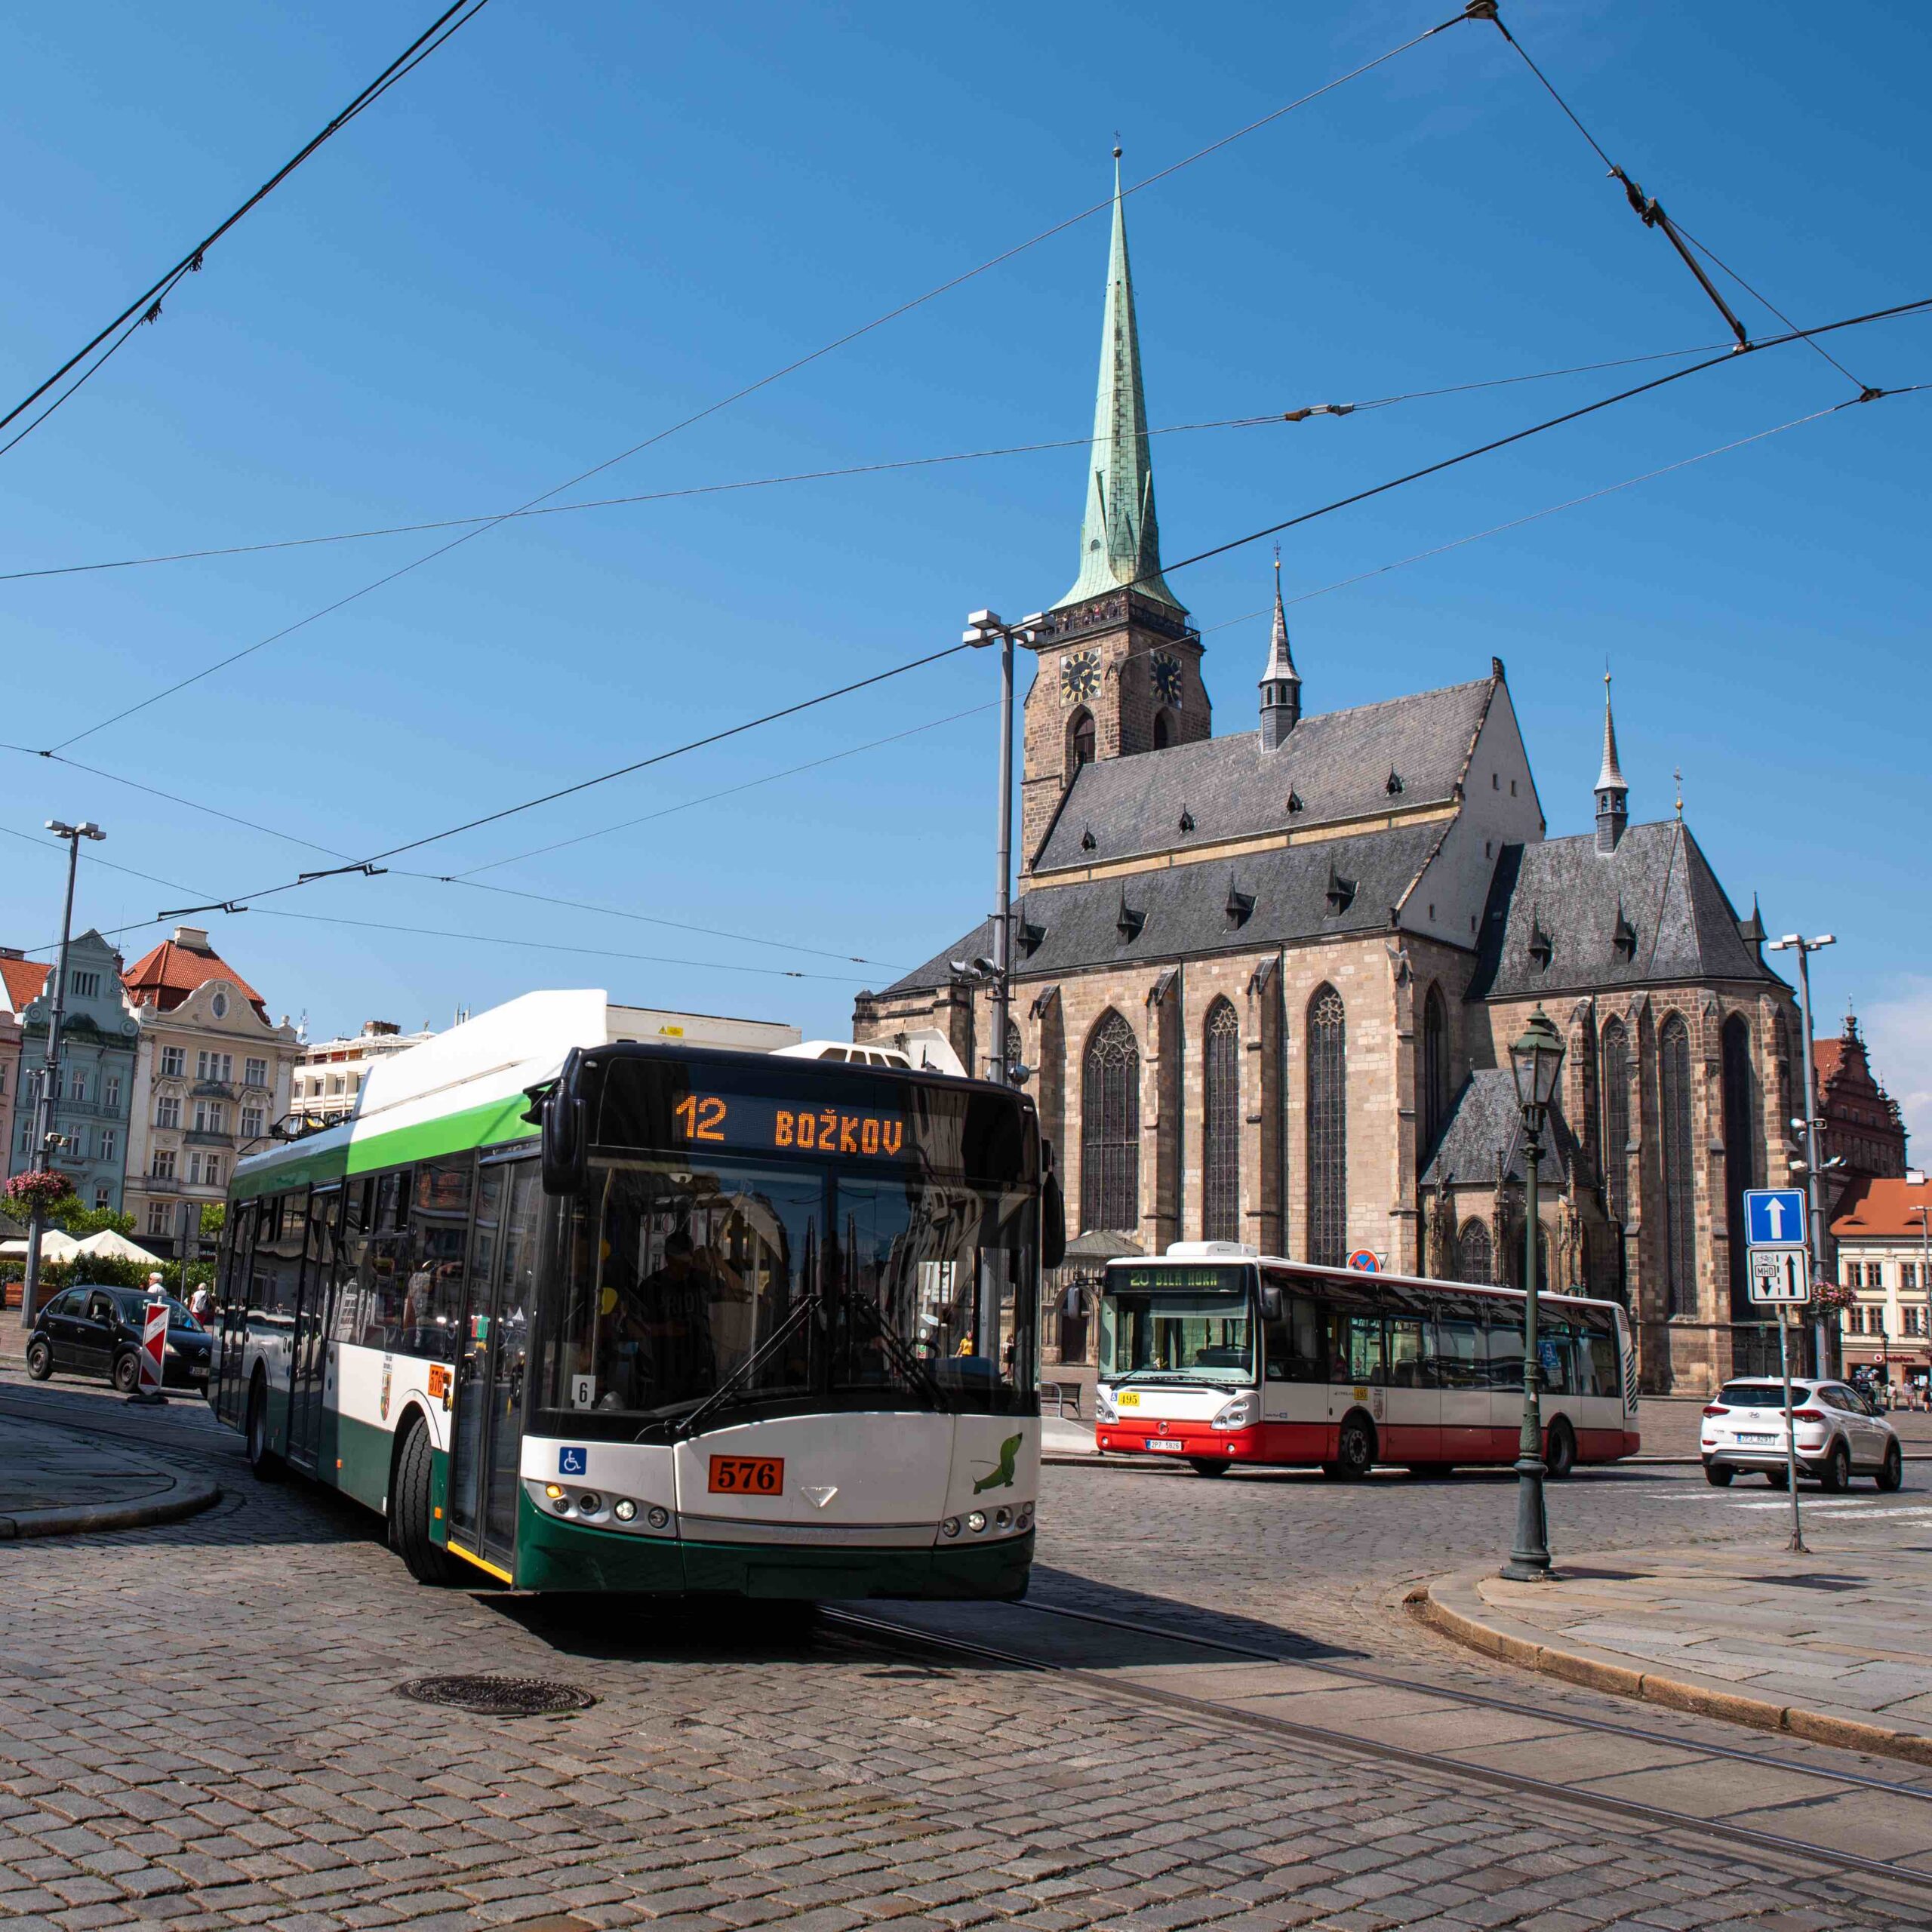 Bateriové trolejbusy spolehlivě slouží při výlukách i mimořádnostech v dopravě